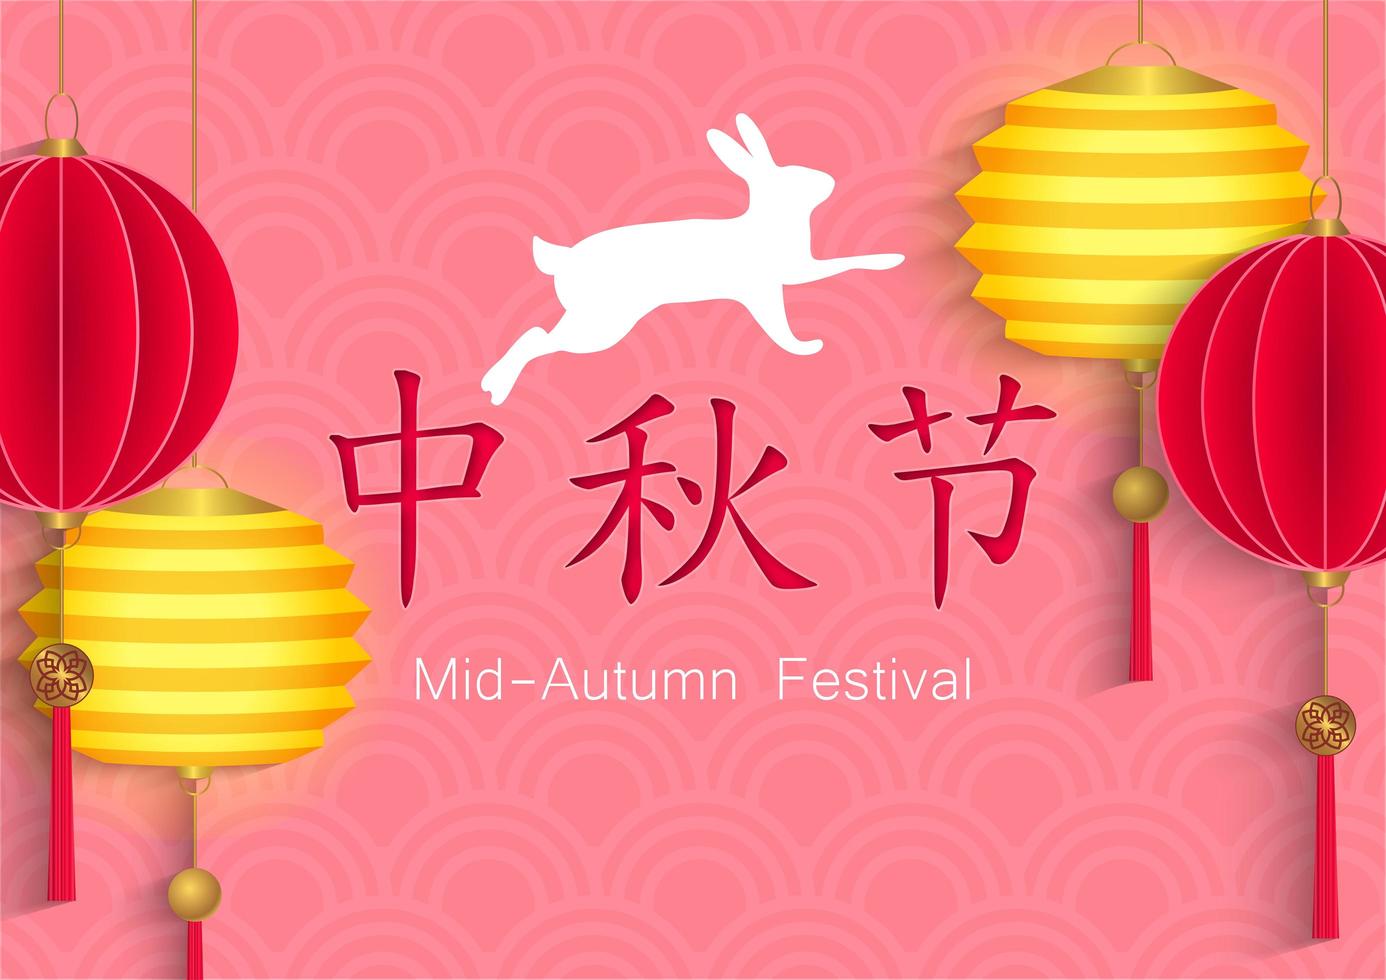 Mid autumn festival card design vector